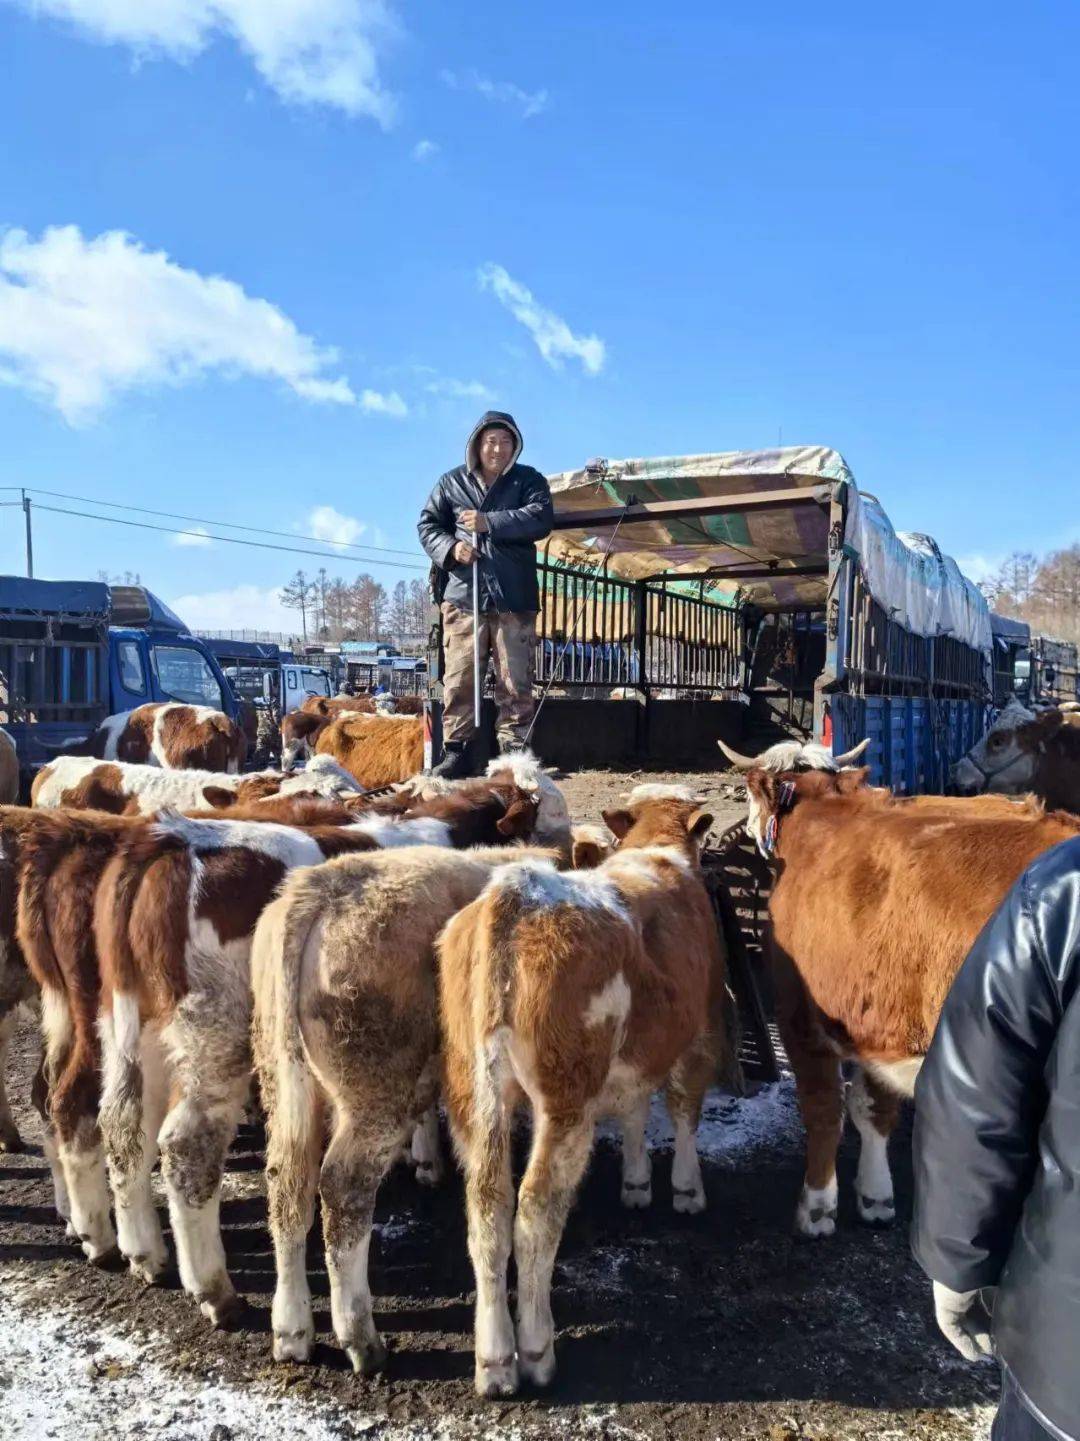 北京蒙贝利亚种牛冻精图片